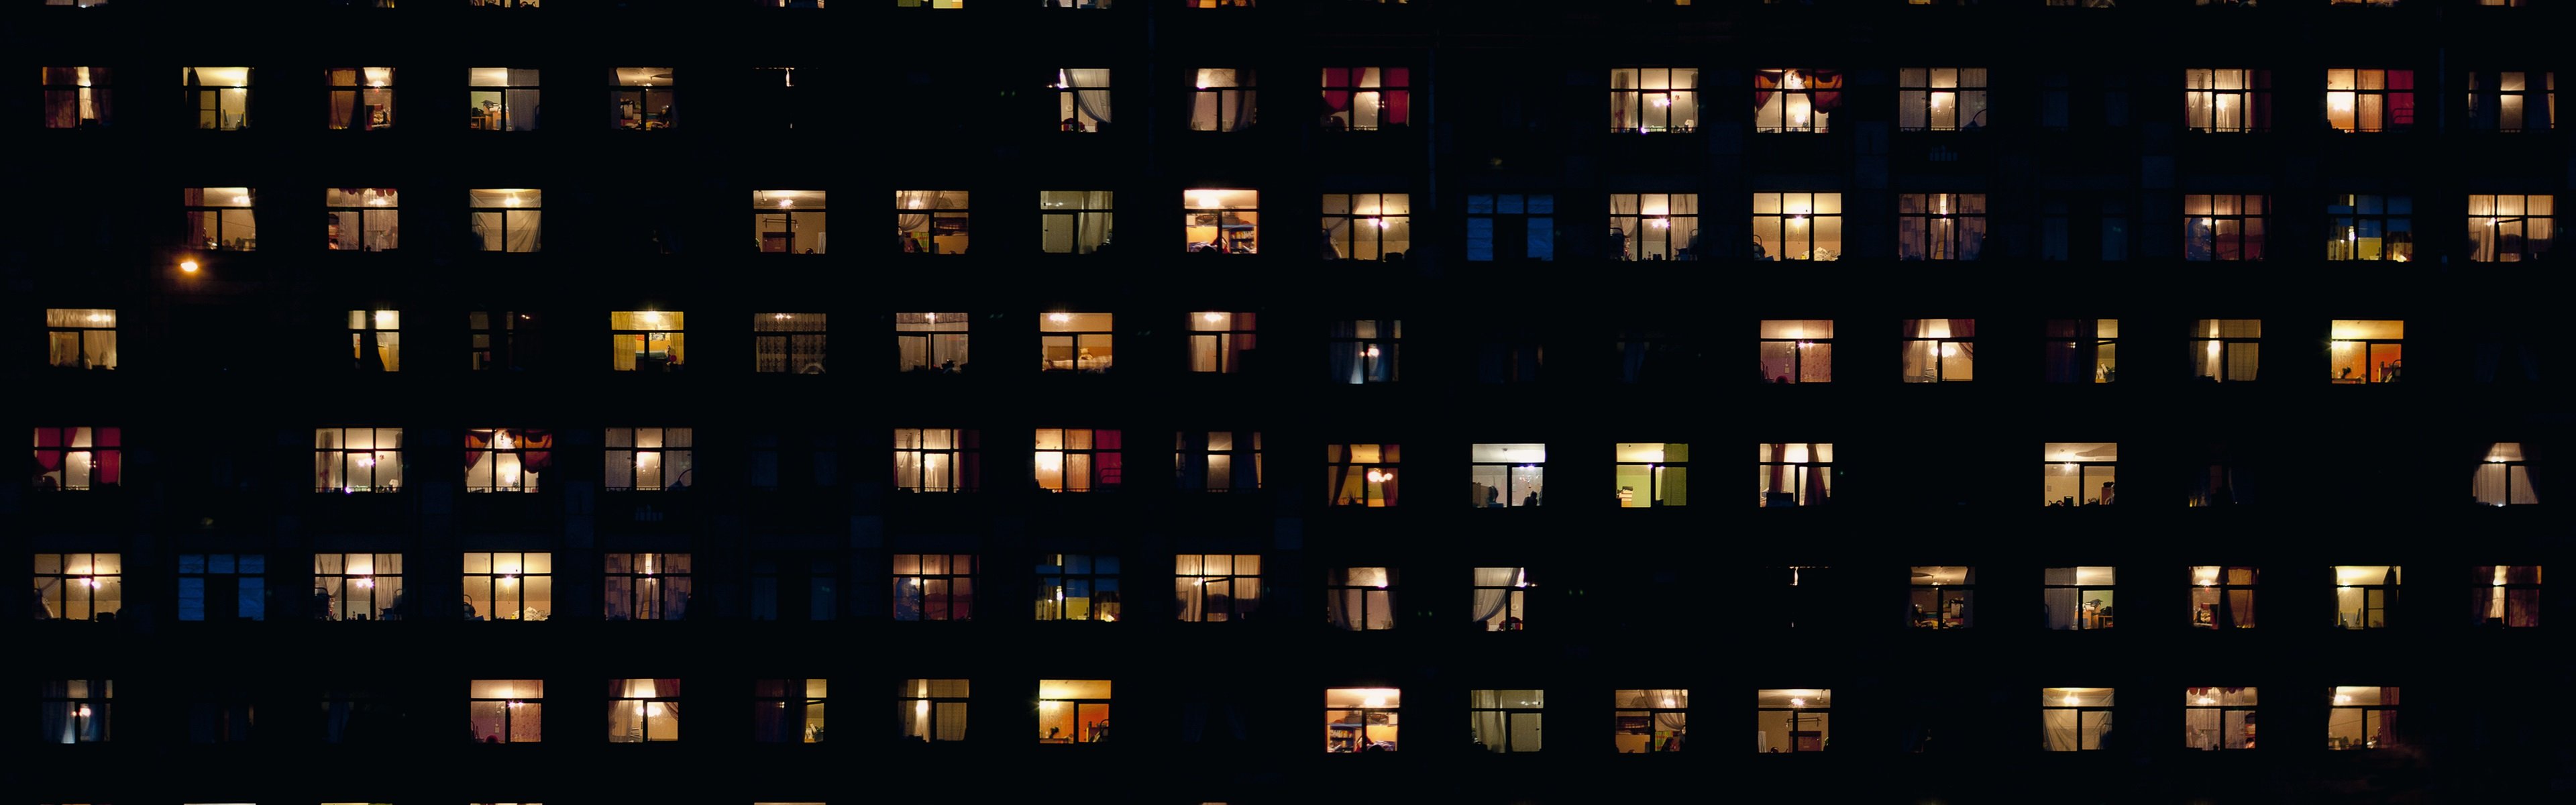 Звуки в доме ночью. Вечерние окна домов. Ночные окна домов. Многоэтажный дом ночью. Свет в окнах домов.